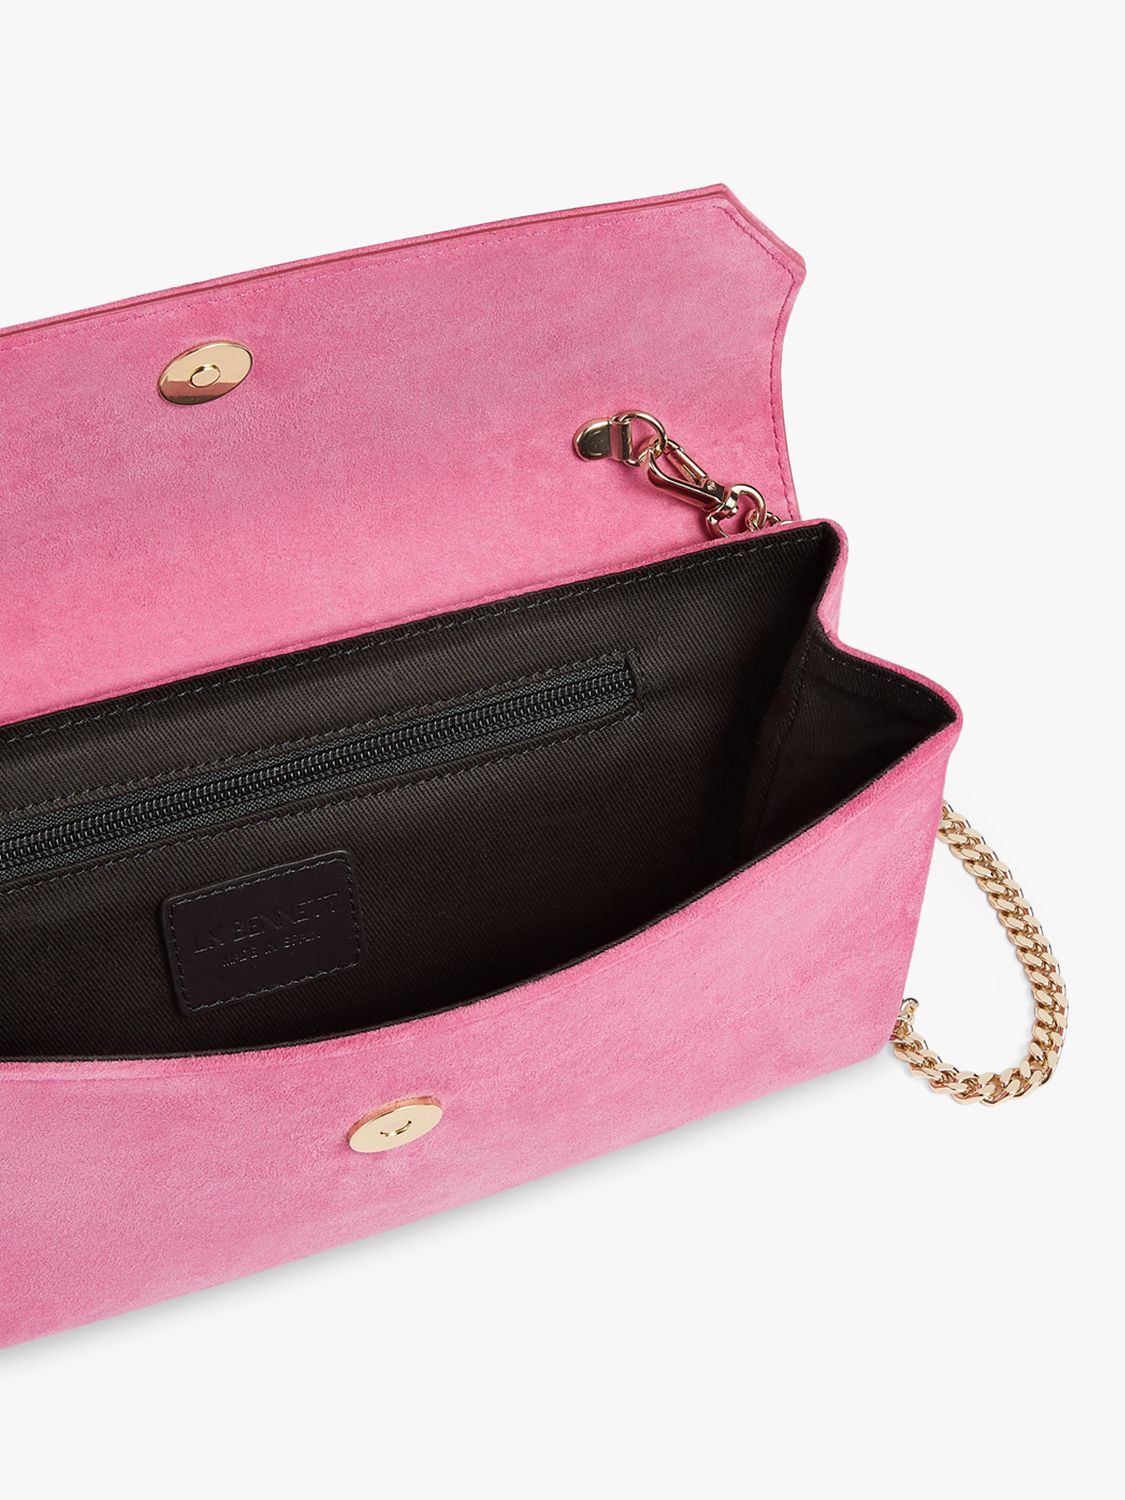 L.K.Bennett Dora Suede Envelope Clutch Bag, Pink at John Lewis & Partners